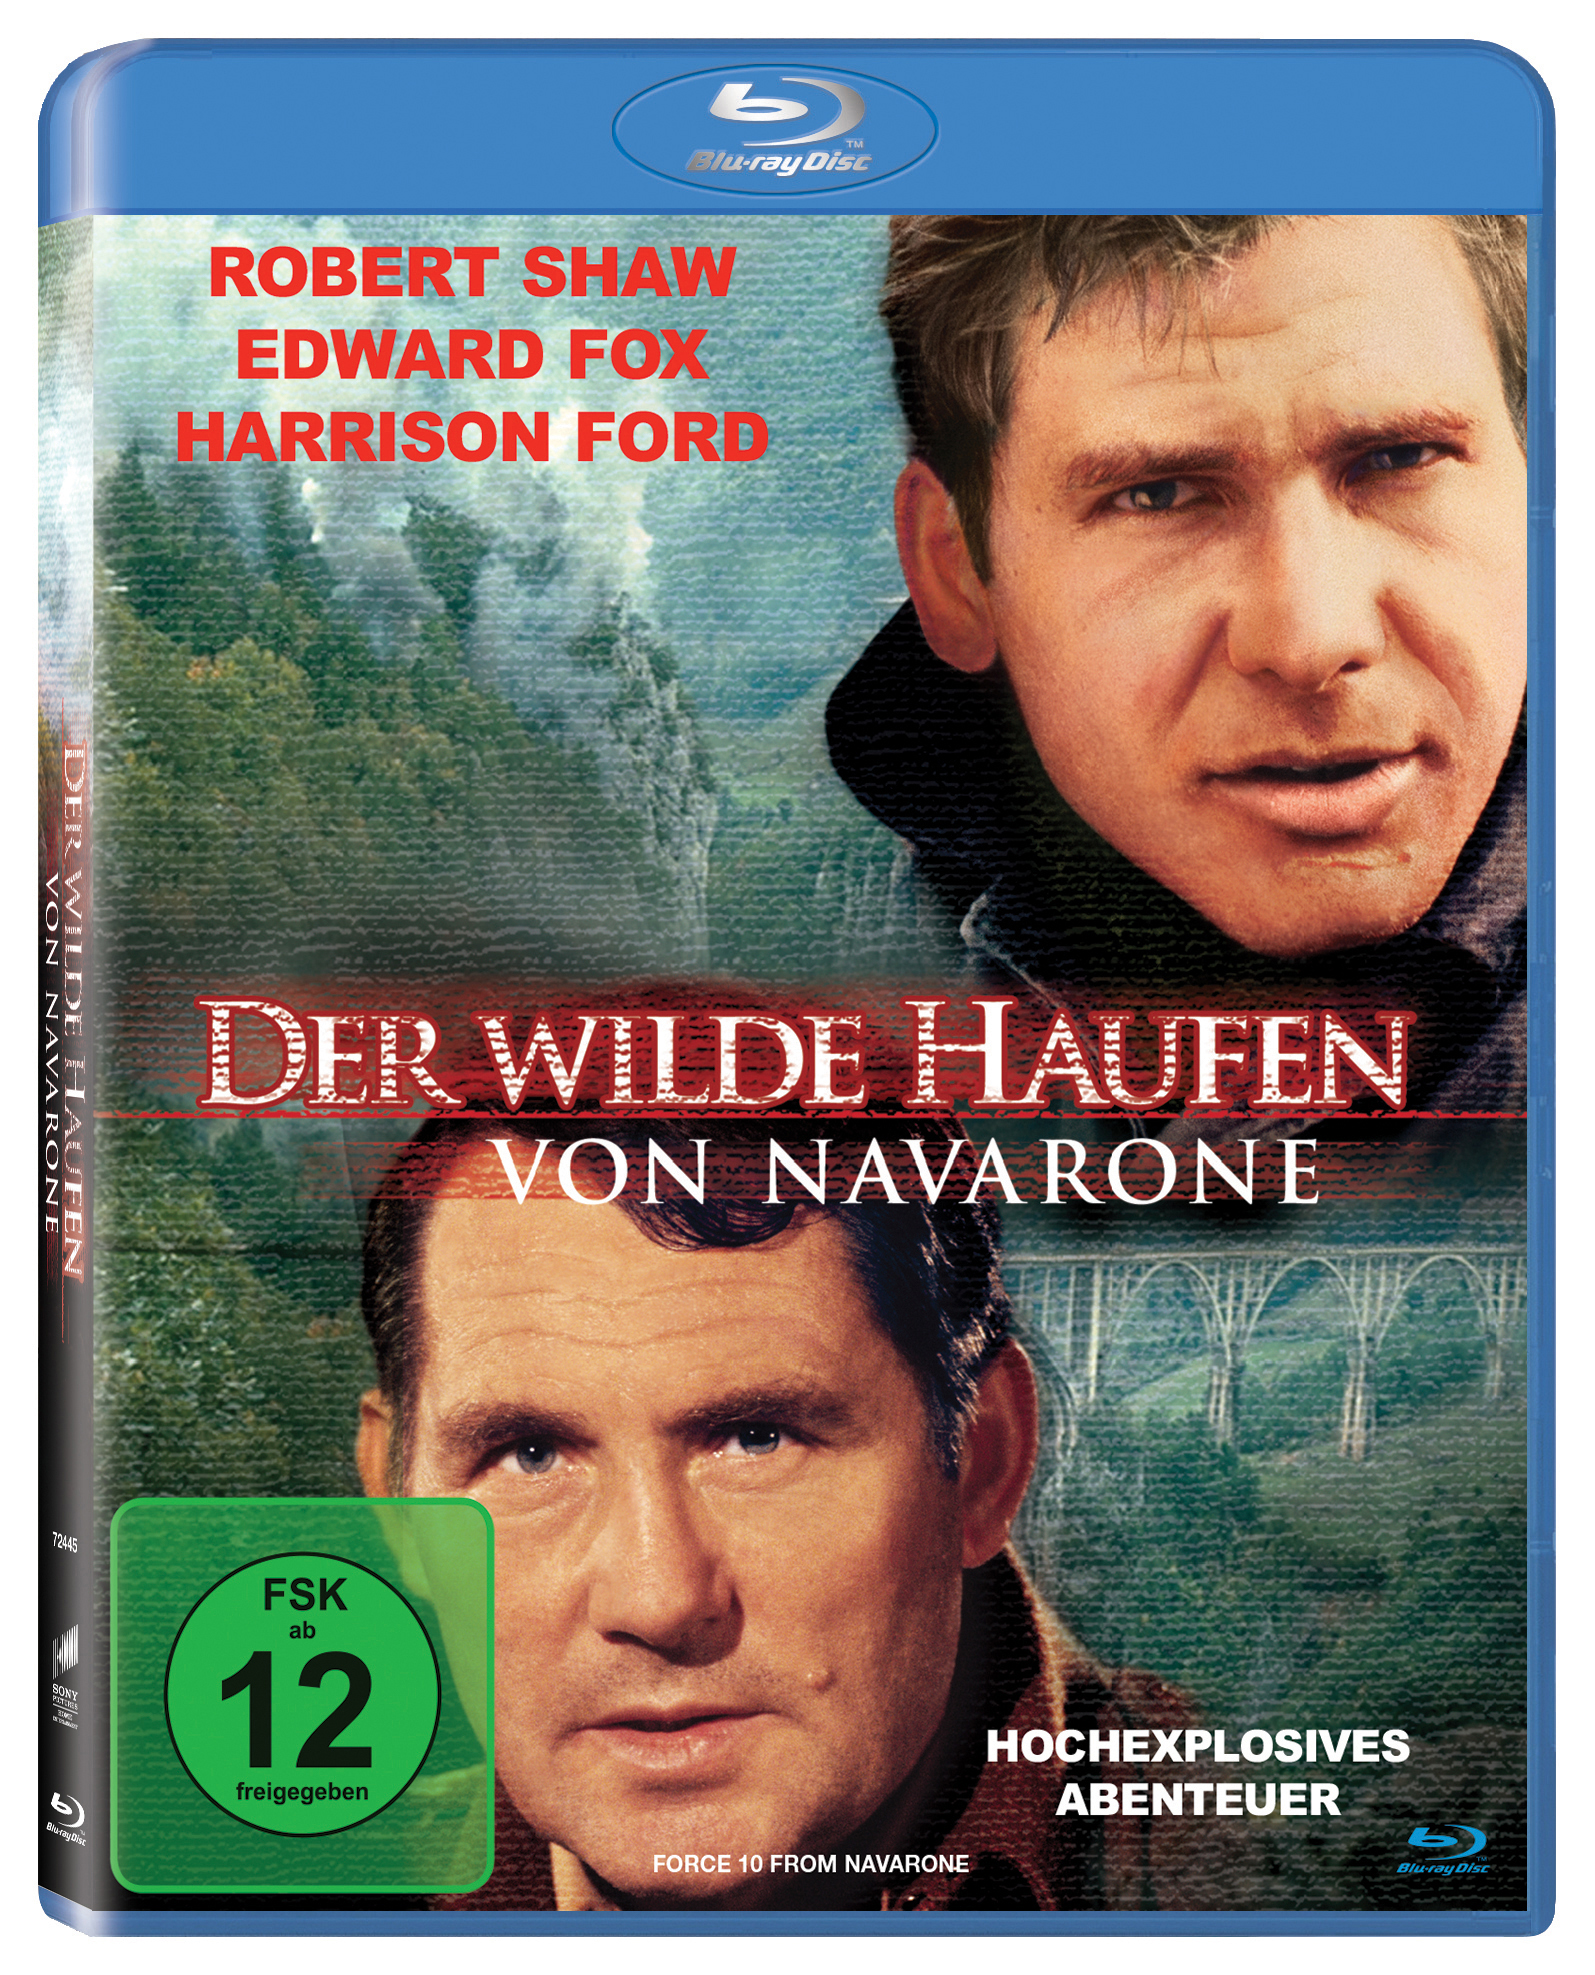 Blu-ray Navarone Haufen Der von wilde